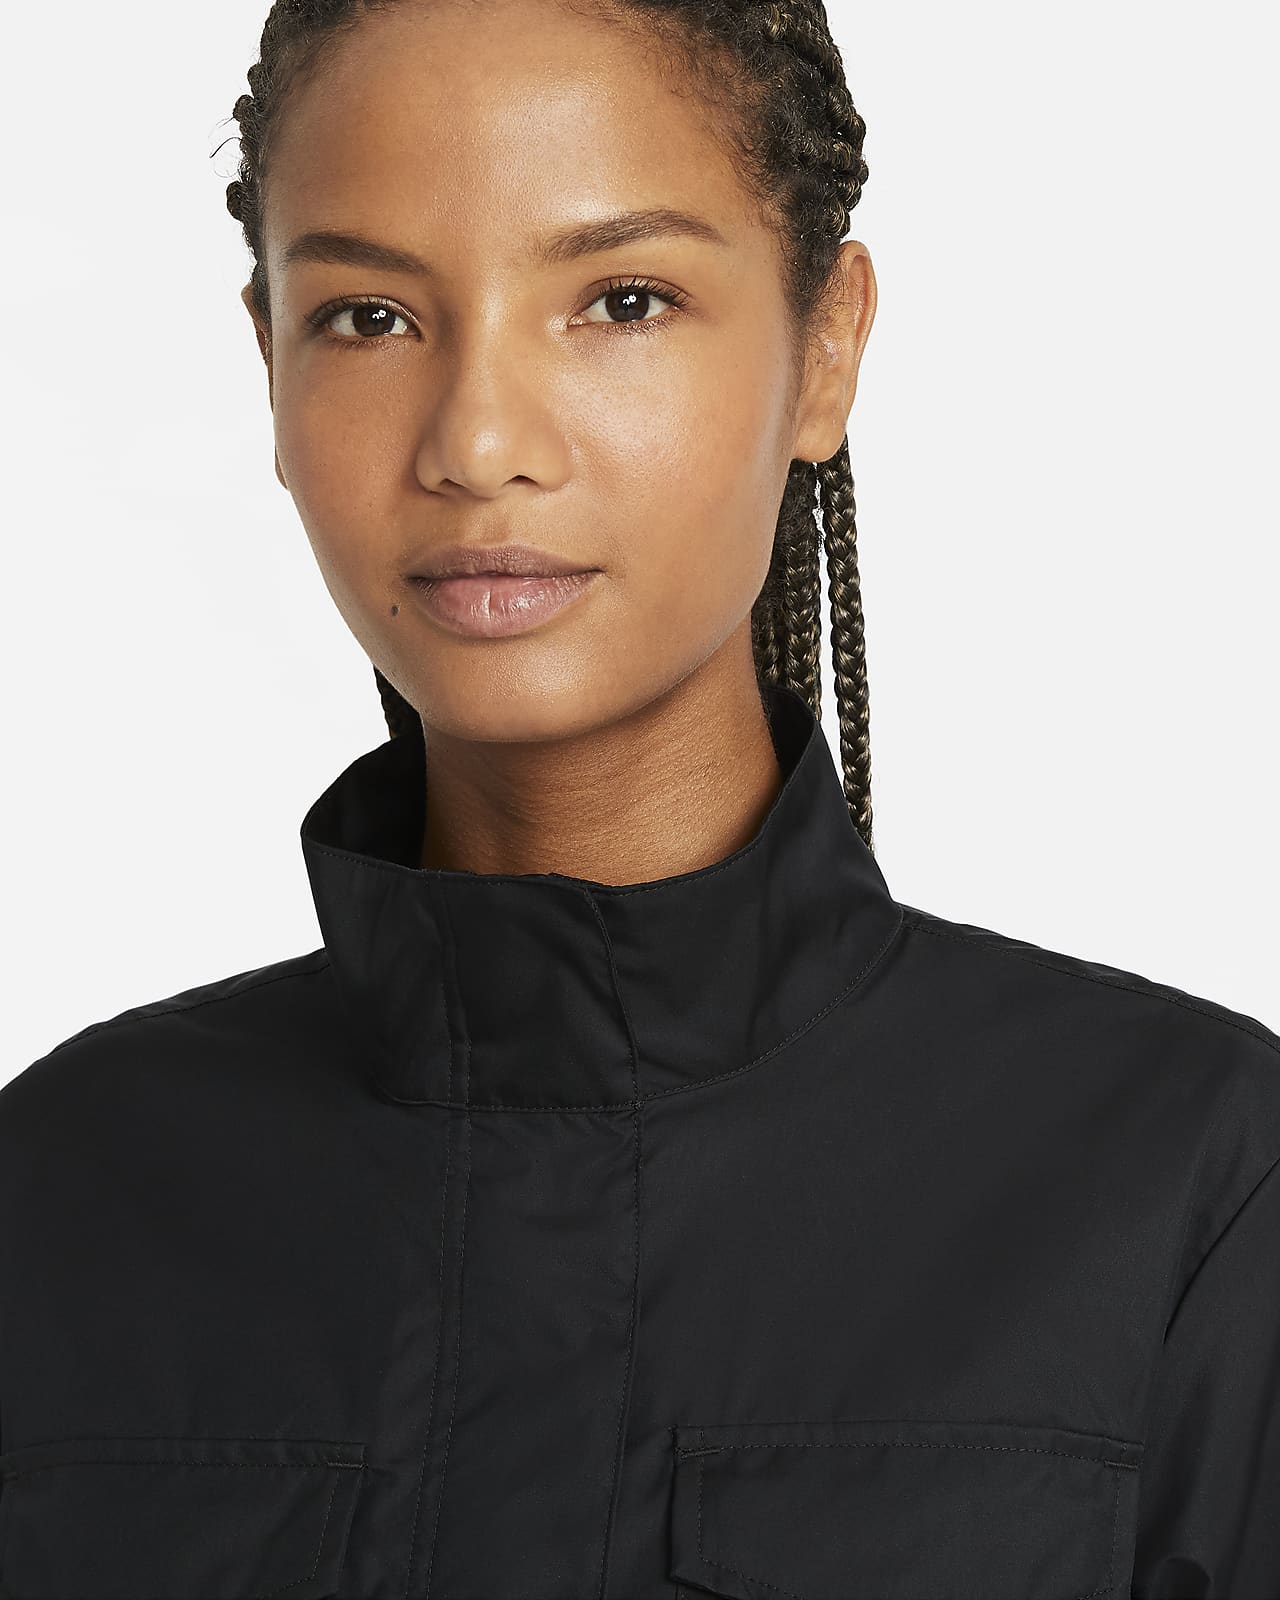 Nike Sportswear Women's M65 Woven Jacket. Nike AE